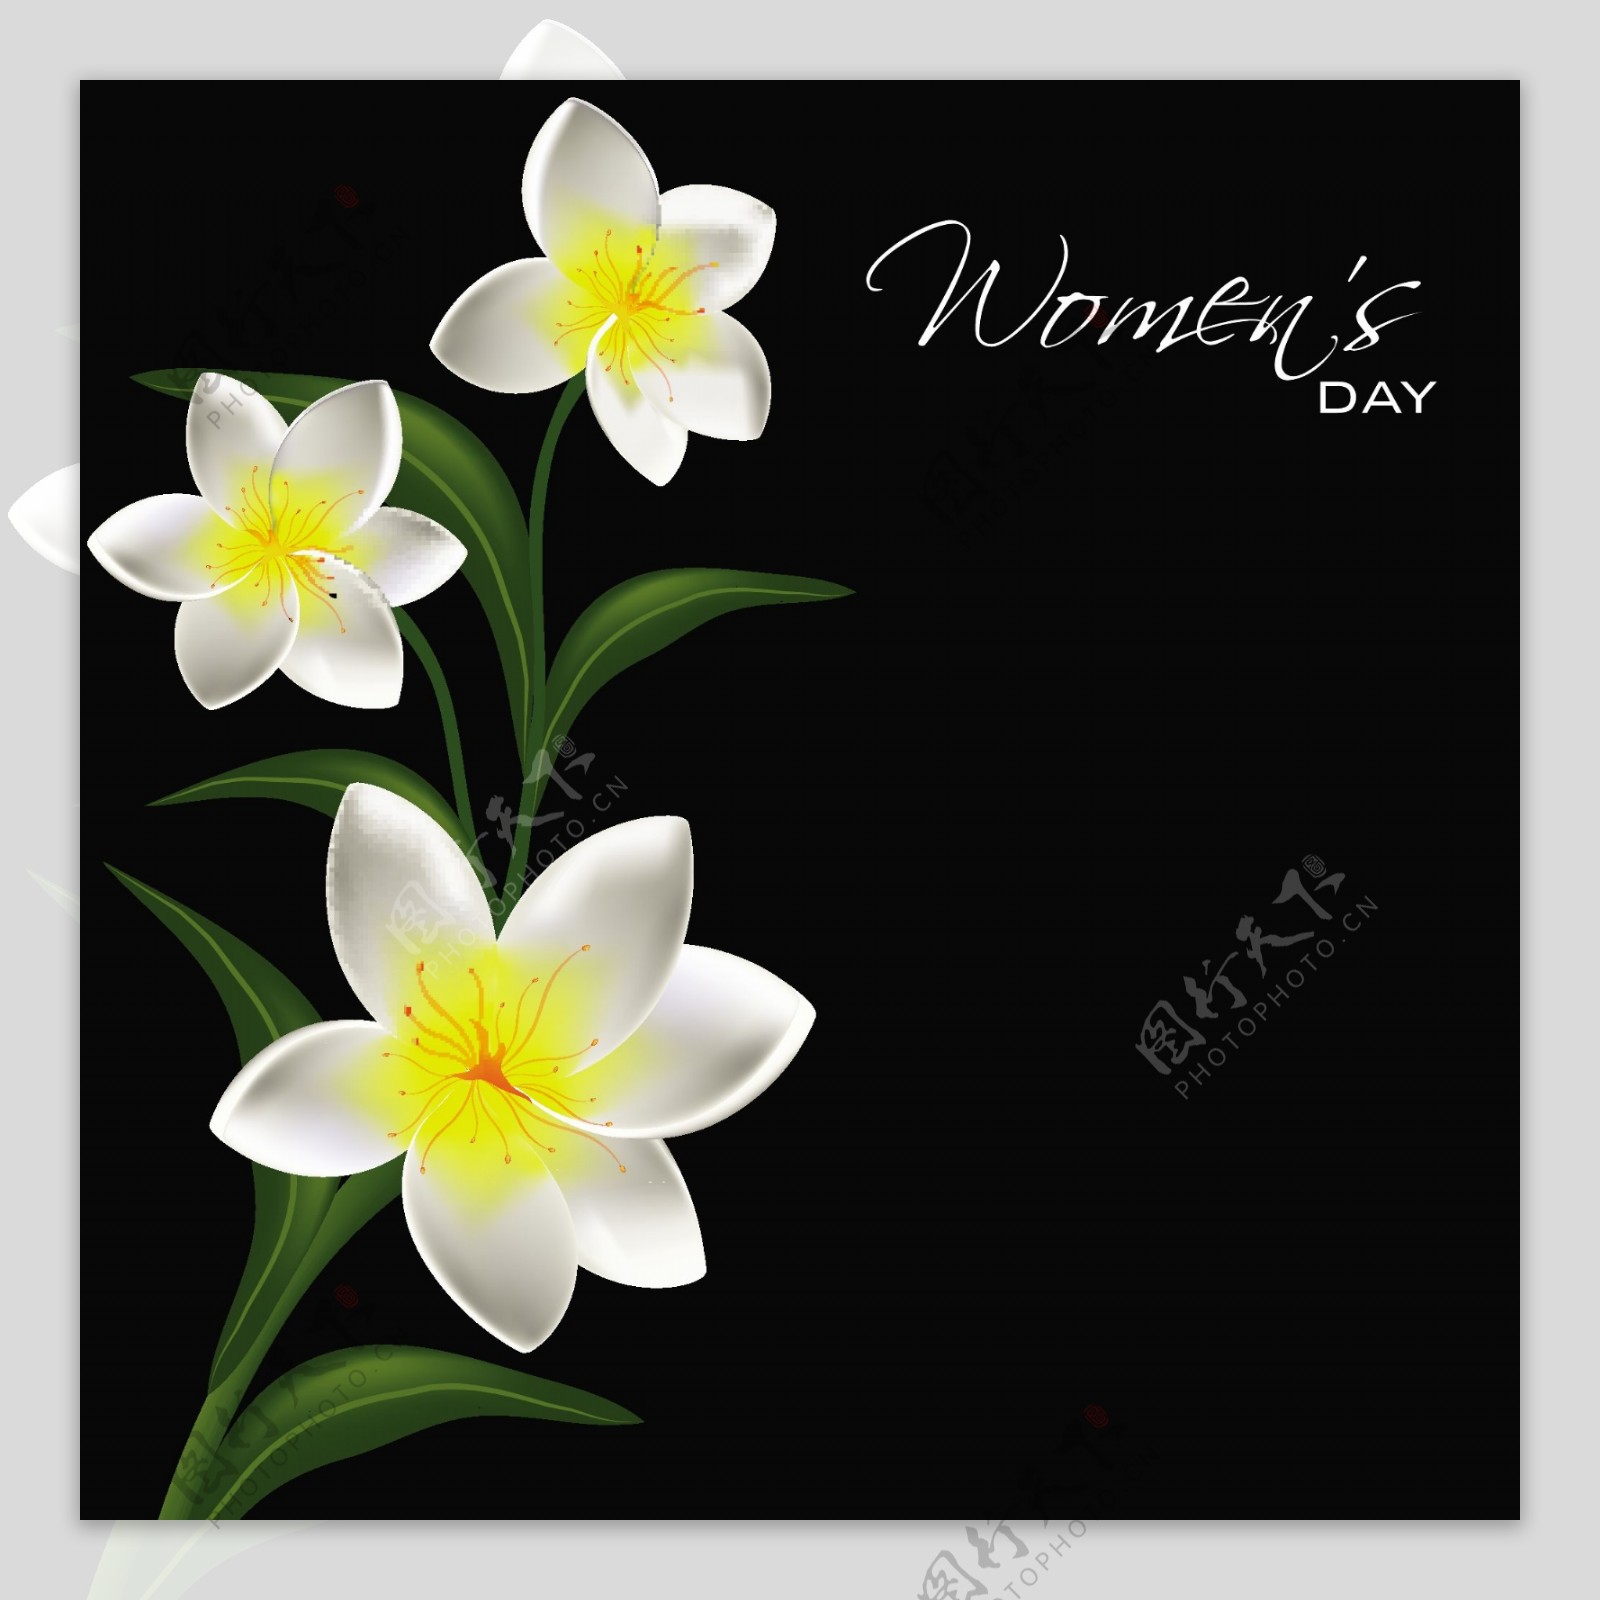 三八妇女节贺卡或海报设计与美丽的花朵在黑色的背景设计